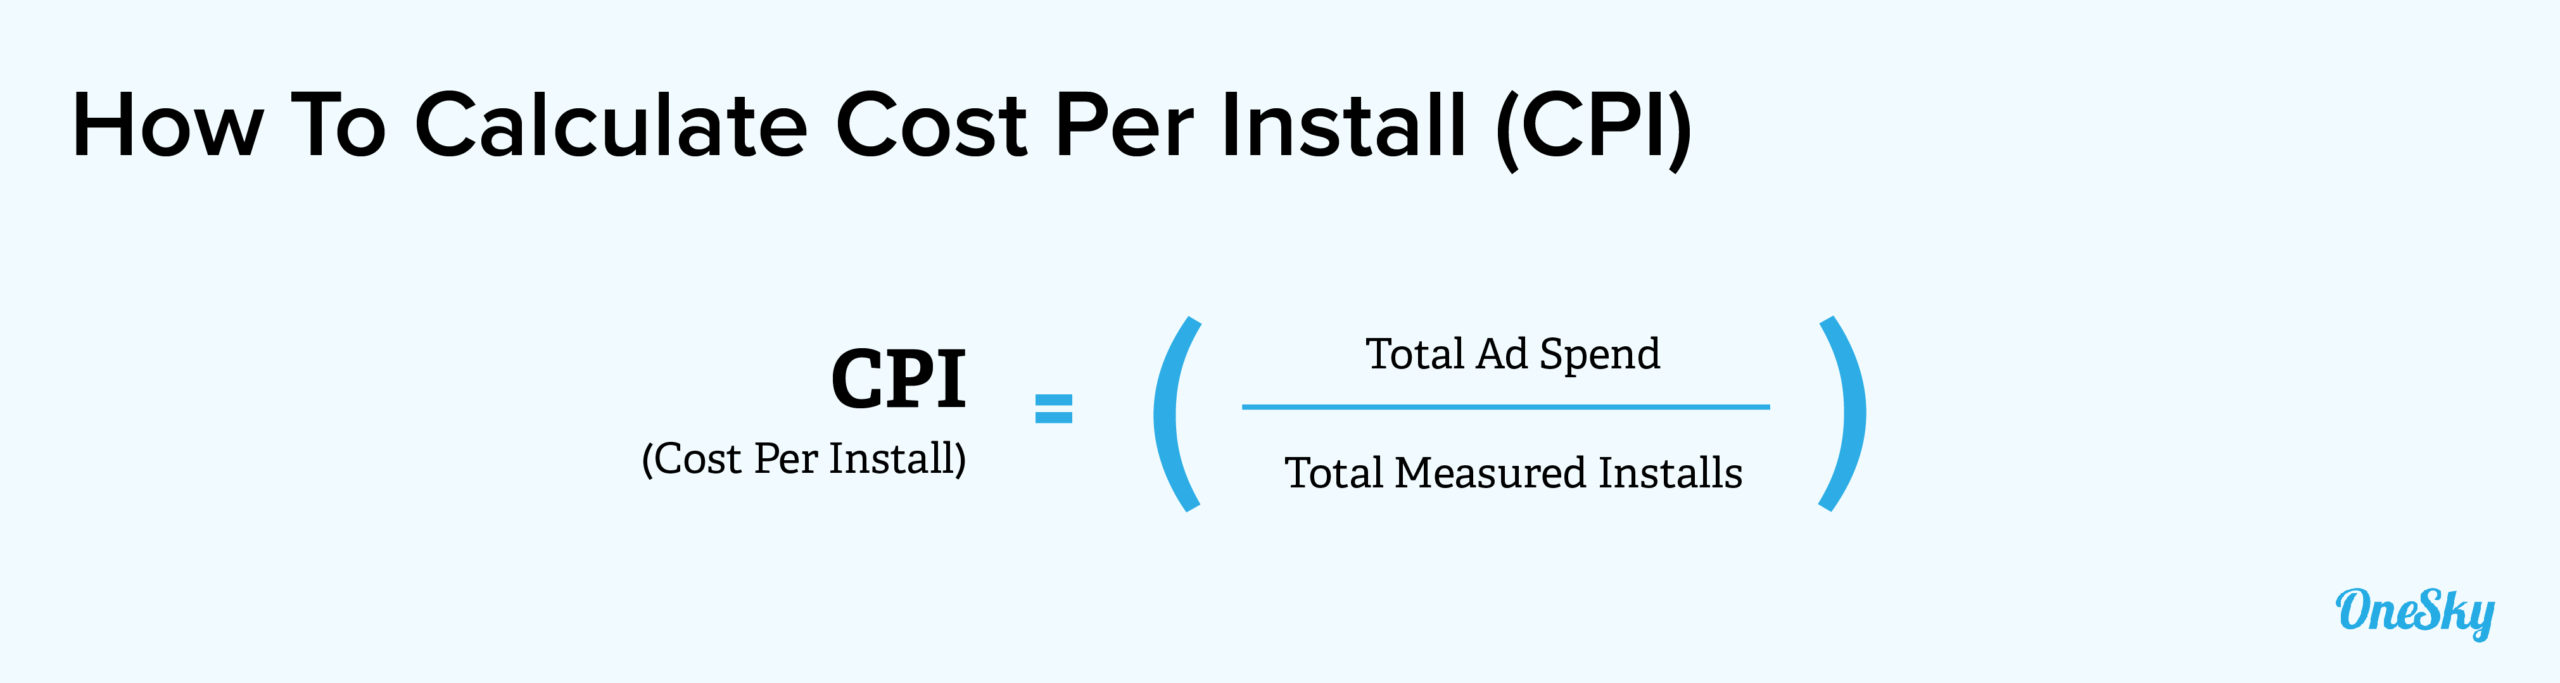 Cost Per Install (CPI)